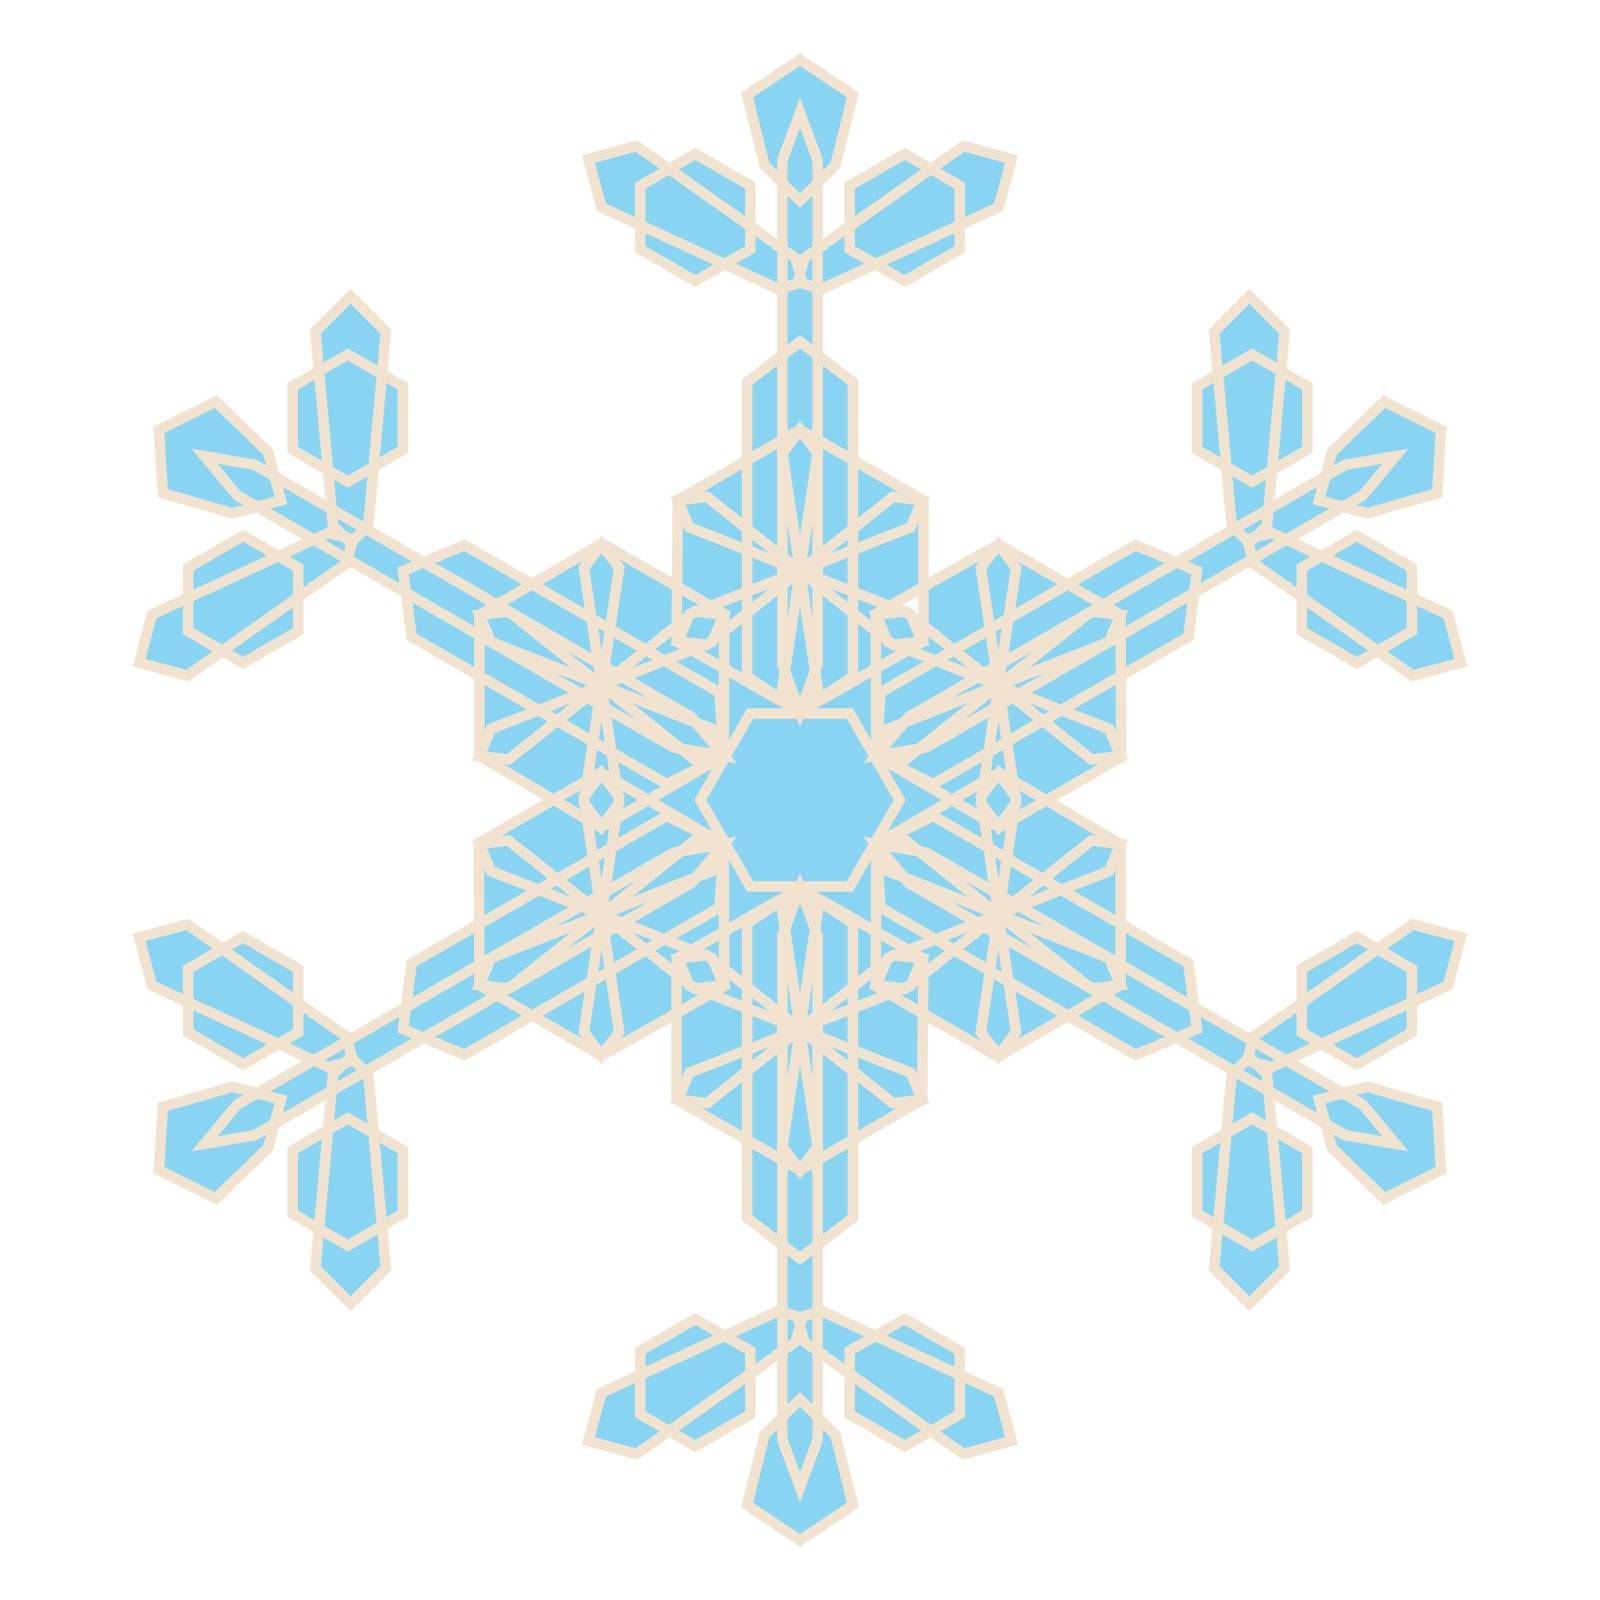 Crystal Snowflake by benjaminlion